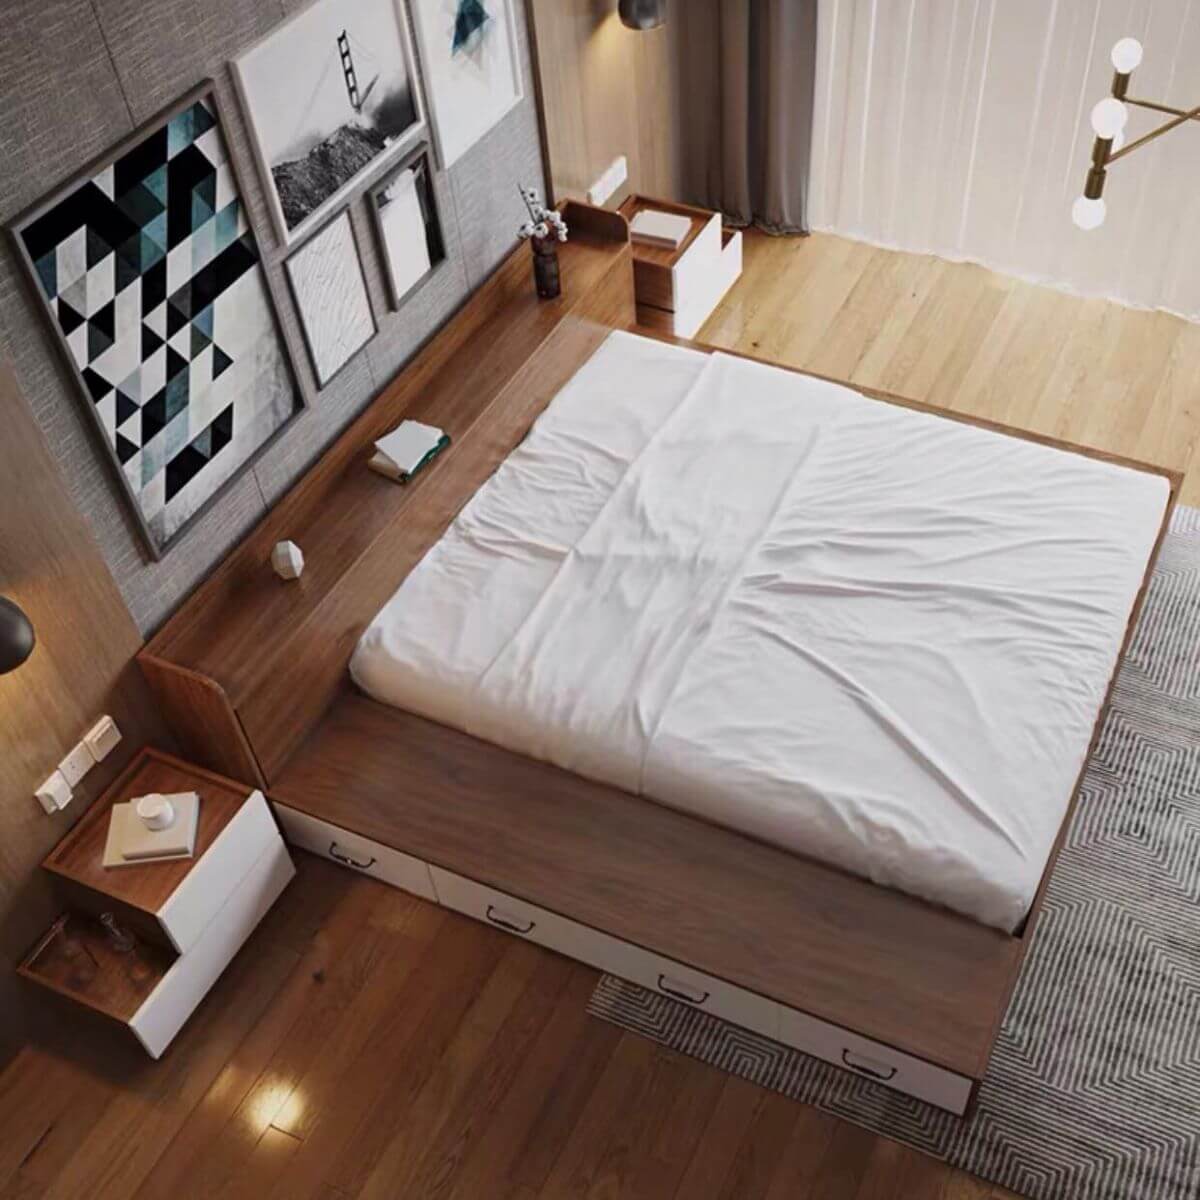 Với thiết kế đẹp mắt và tiện dụng, giường ngủ bệt thiết kế 4 hộc kéo sẽ giúp bạn giải quyết vấn đề không gian giấu đồ một cách dễ dàng và hiệu quả. Thêm vào đó, chiếc giường này còn mang lại cho bạn một giấc ngủ ngon và sâu hơn bao giờ hết. Hãy đến với chúng tôi để tìm hiểu thêm về sản phẩm này.